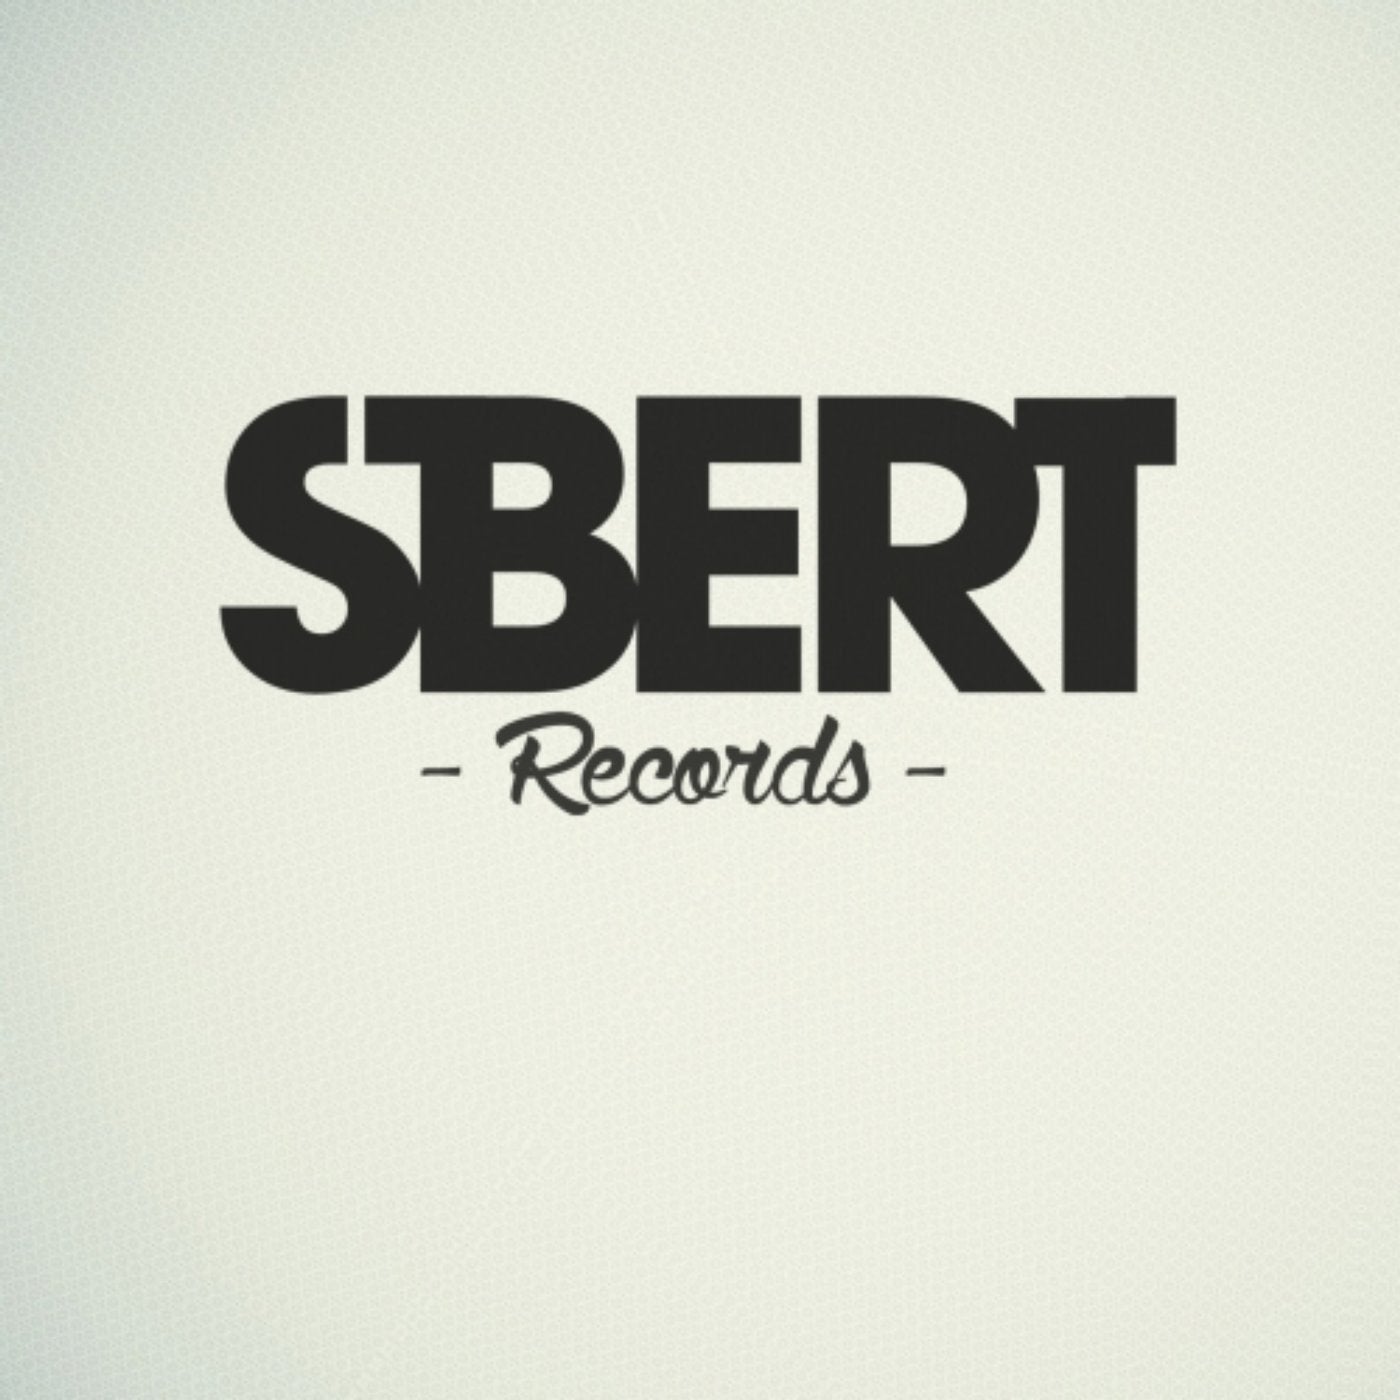 Sbert. Дэни релиз. Sbert работа. Dani Sbert resolved problem (Original Mix).